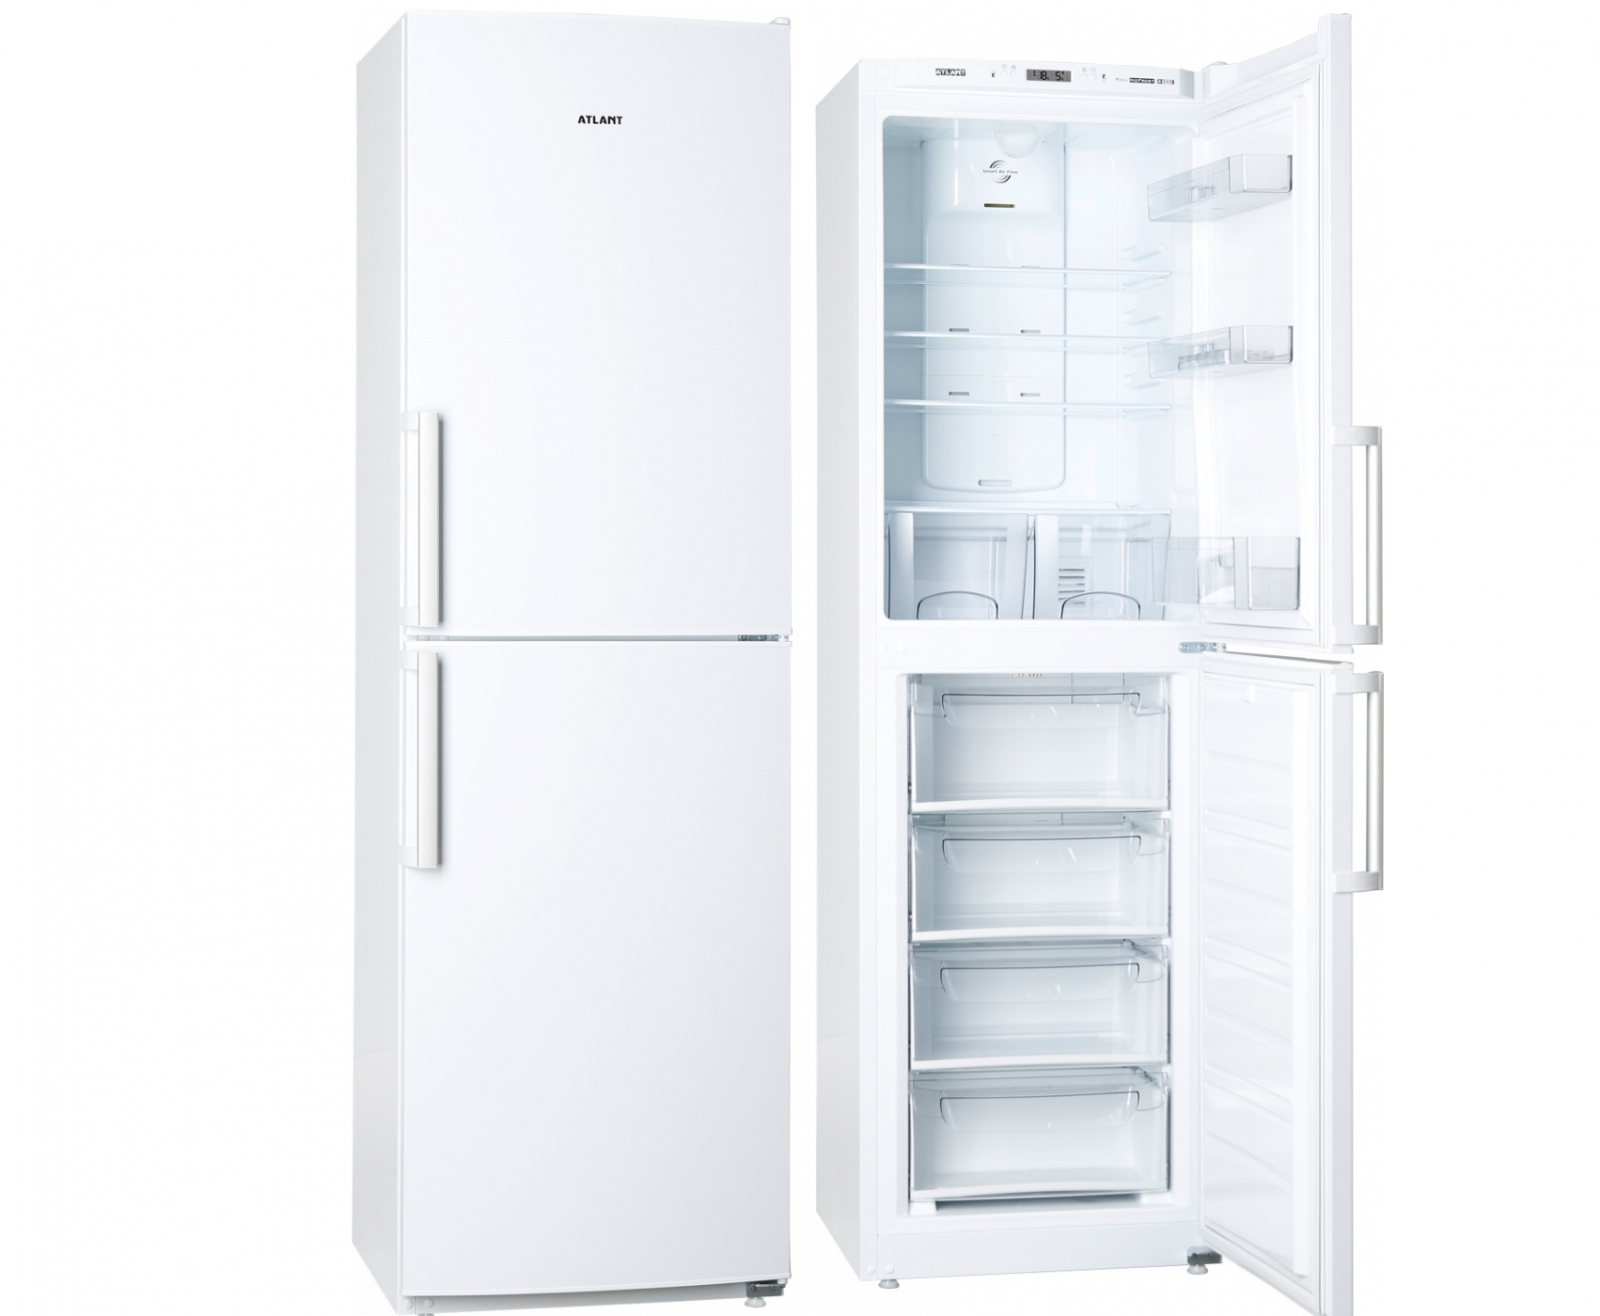 холодильник atlant xm 4423-000 n, купить в Красноярске холодильник atlant xm 4423-000 n,  купить в Красноярске дешево холодильник atlant xm 4423-000 n, купить в Красноярске минимальной цене холодильник atlant xm 4423-000 n